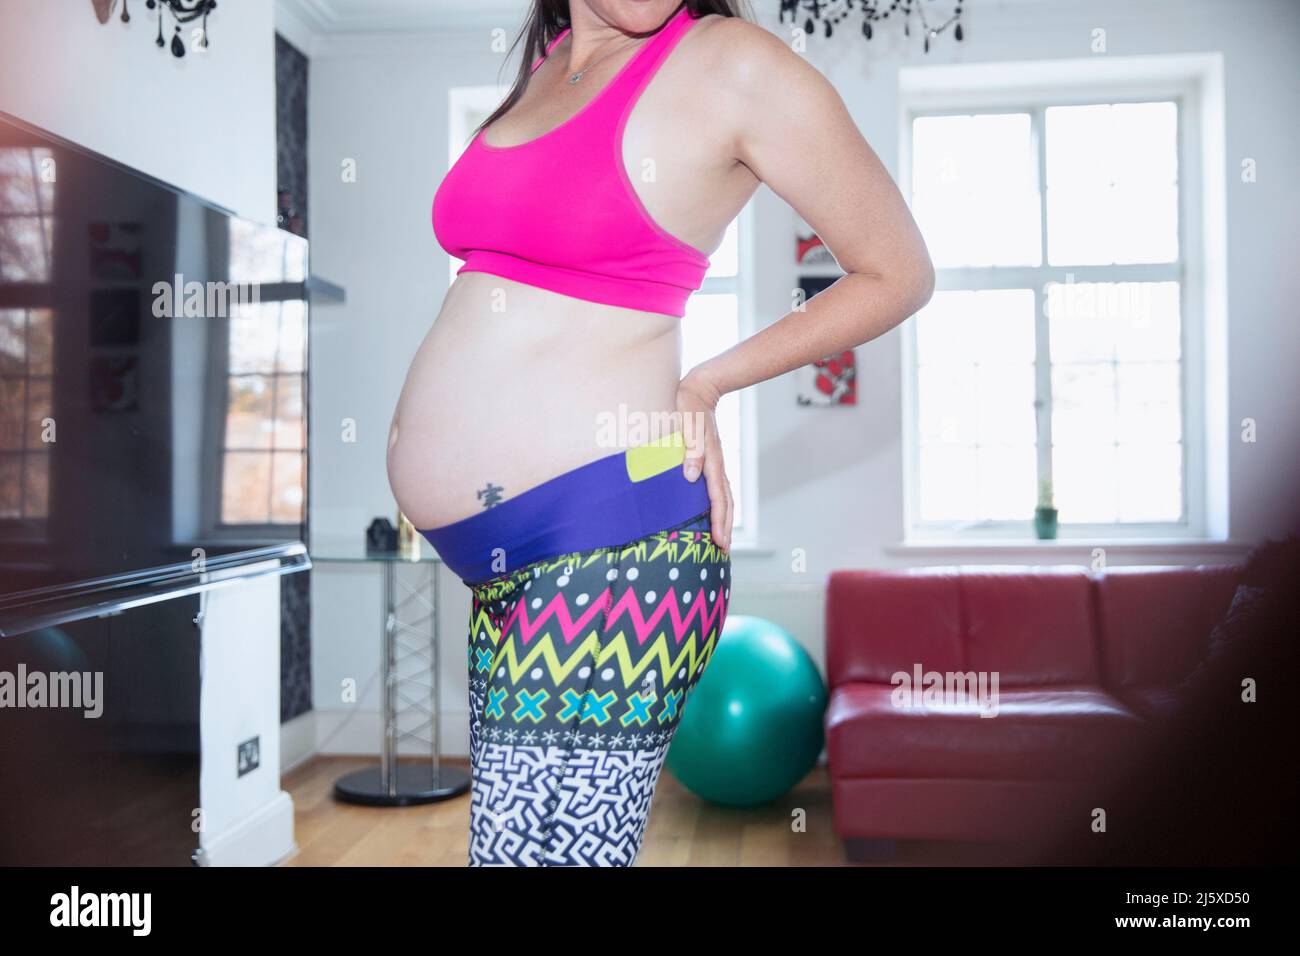 Femme enceinte en soutien-gorge de sport et leggings s'entraînant à la maison Banque D'Images